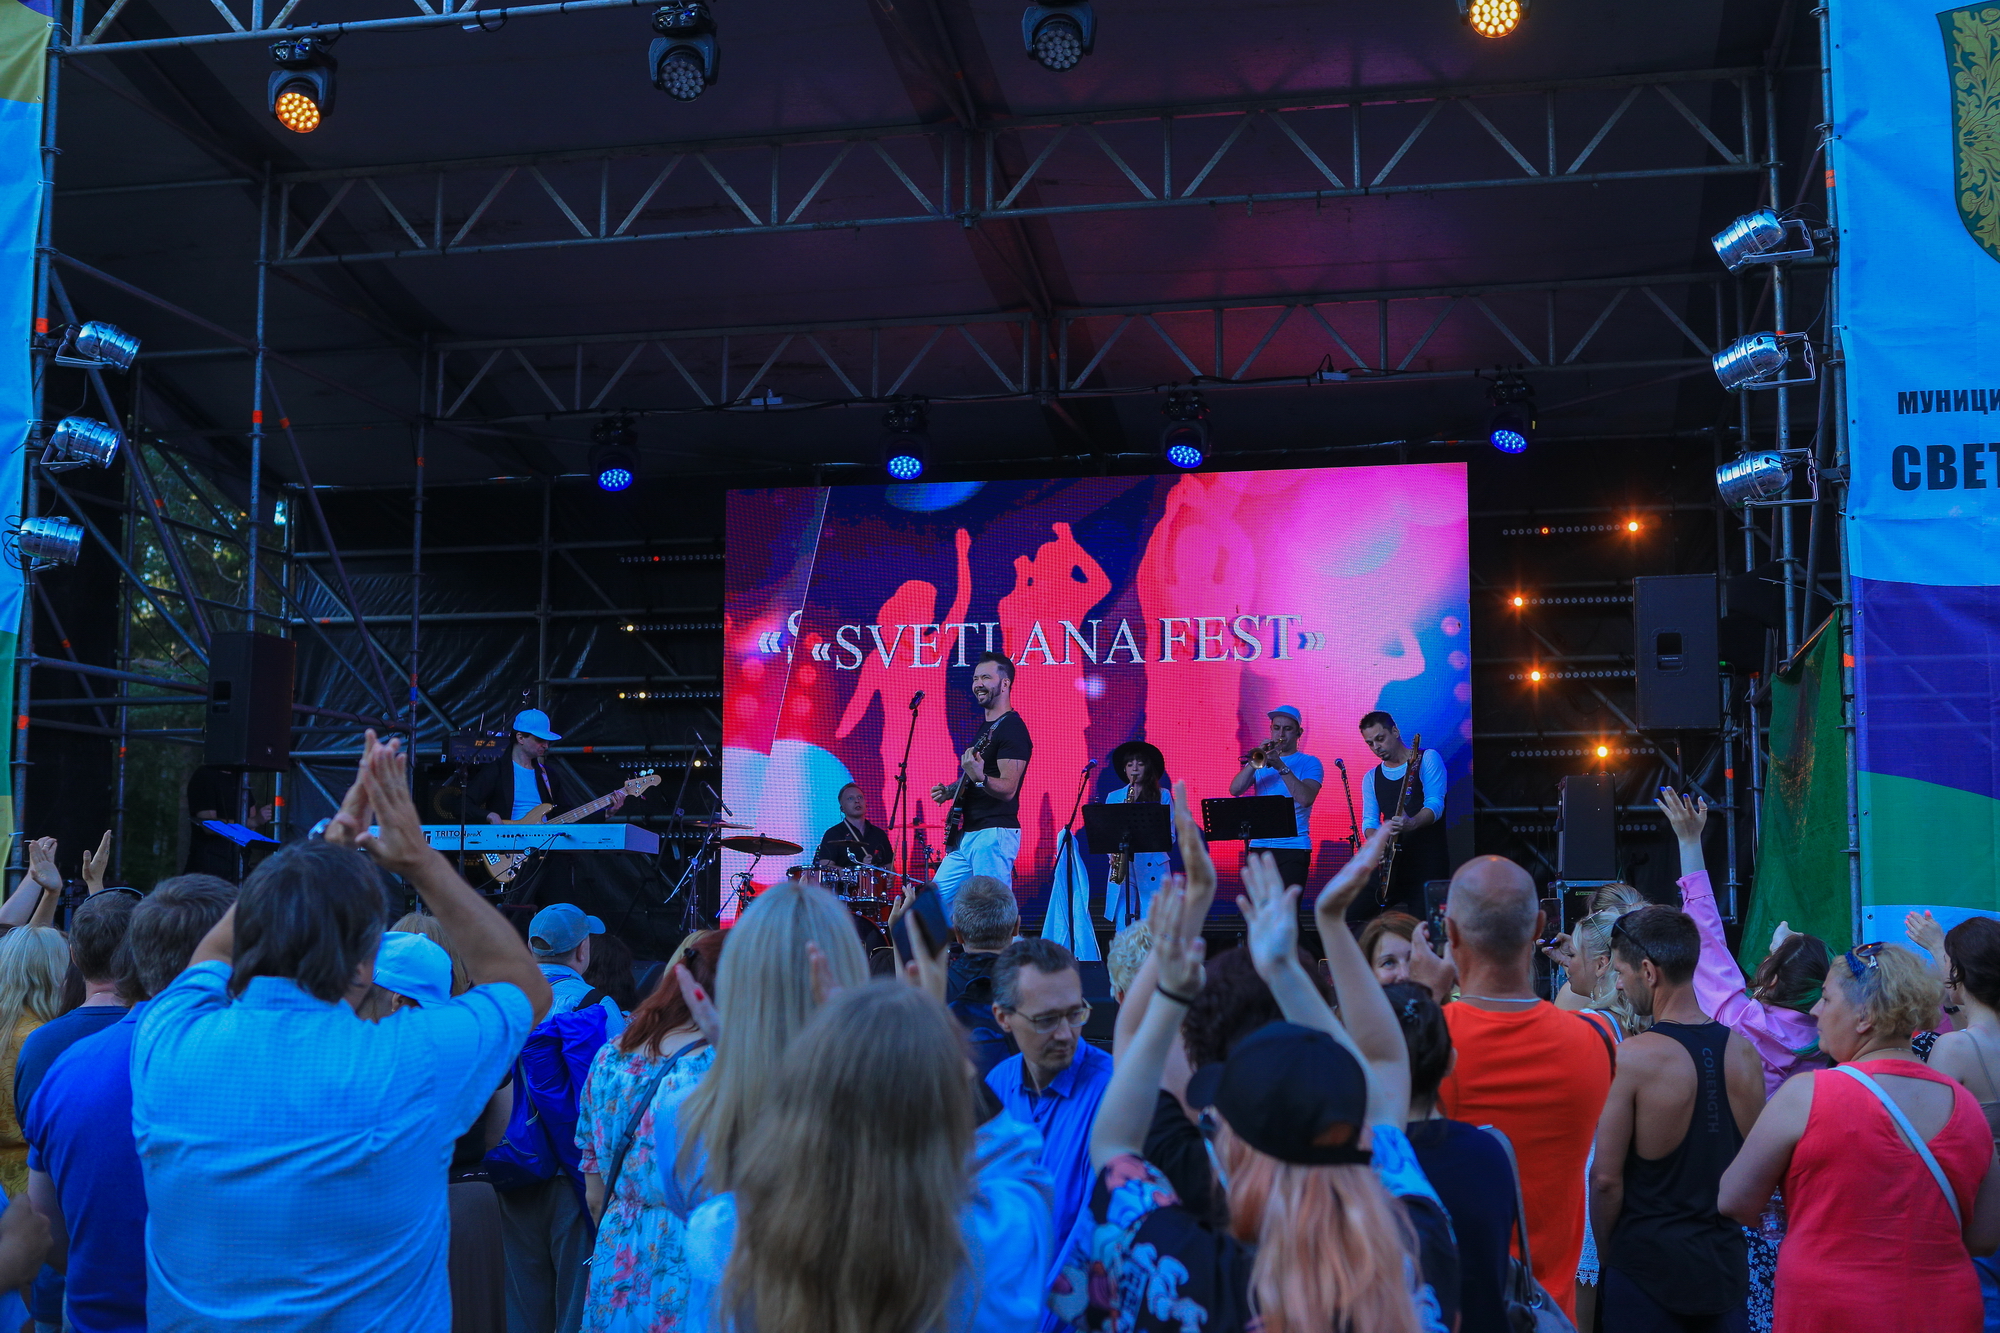 Артист Денис Клявер выступает на сцене в музыкантами. На фоне - люди подняли руки вверх и аплодируют.